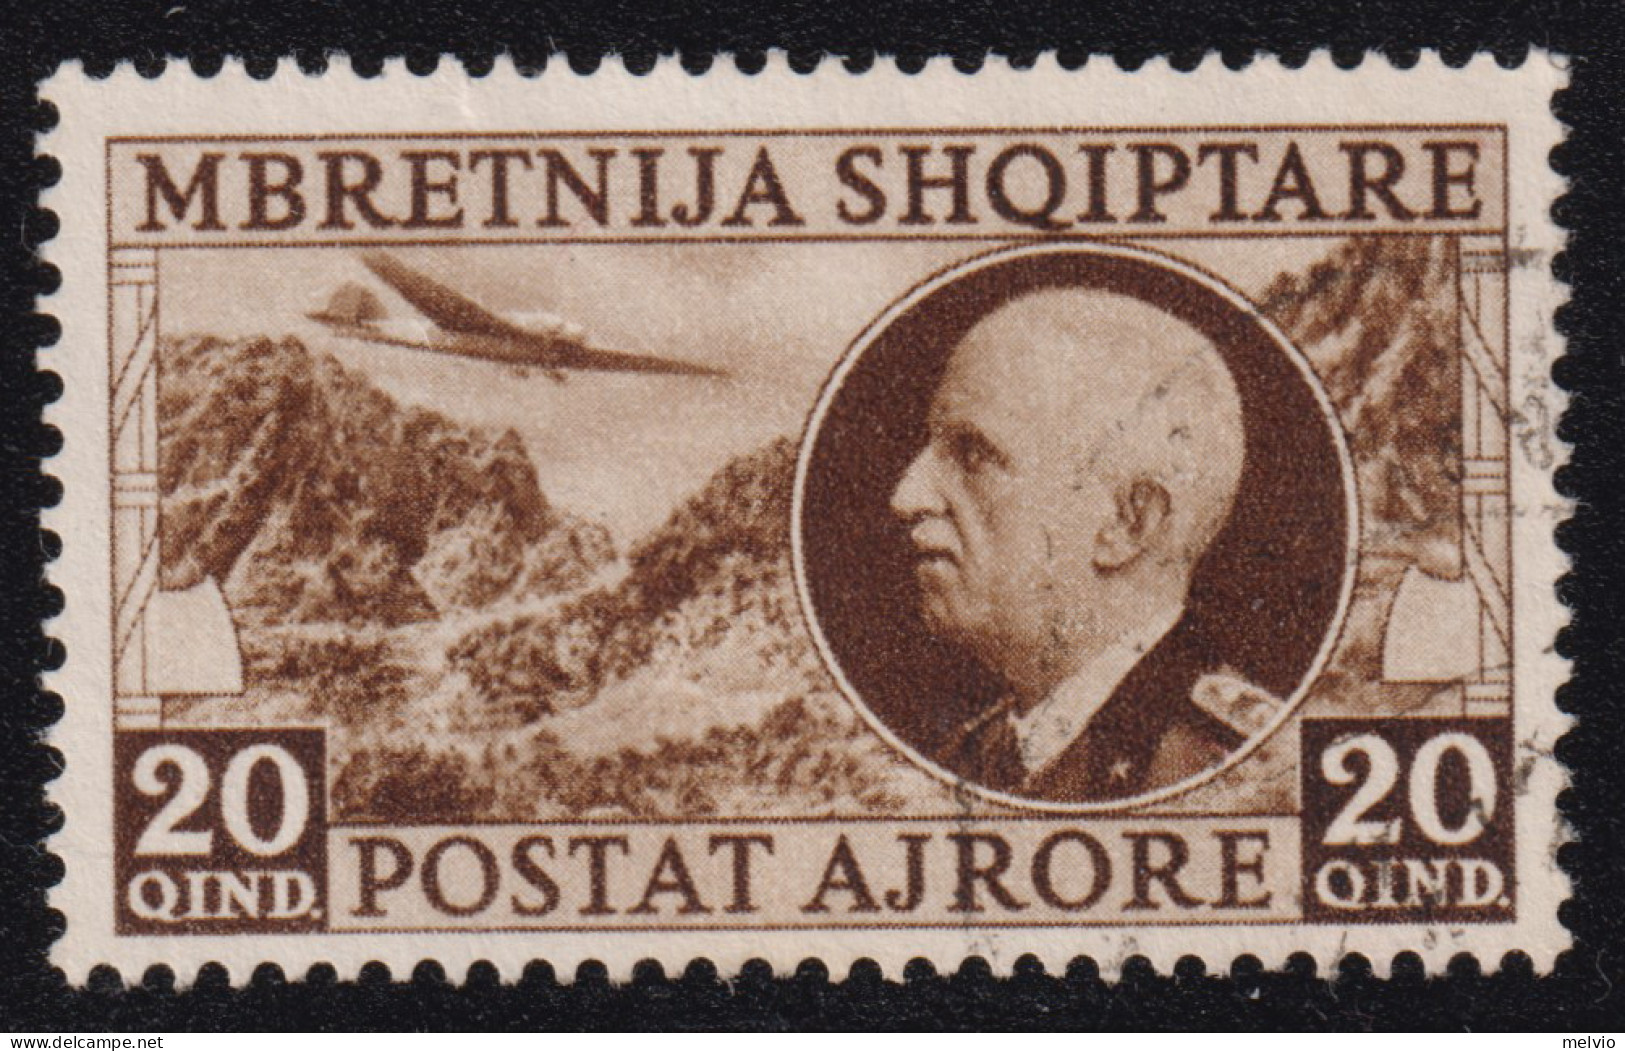 1939-Albania Occupazione Italiana (O=used) Posta Aerea 20q. (P.A. 4) - Albania